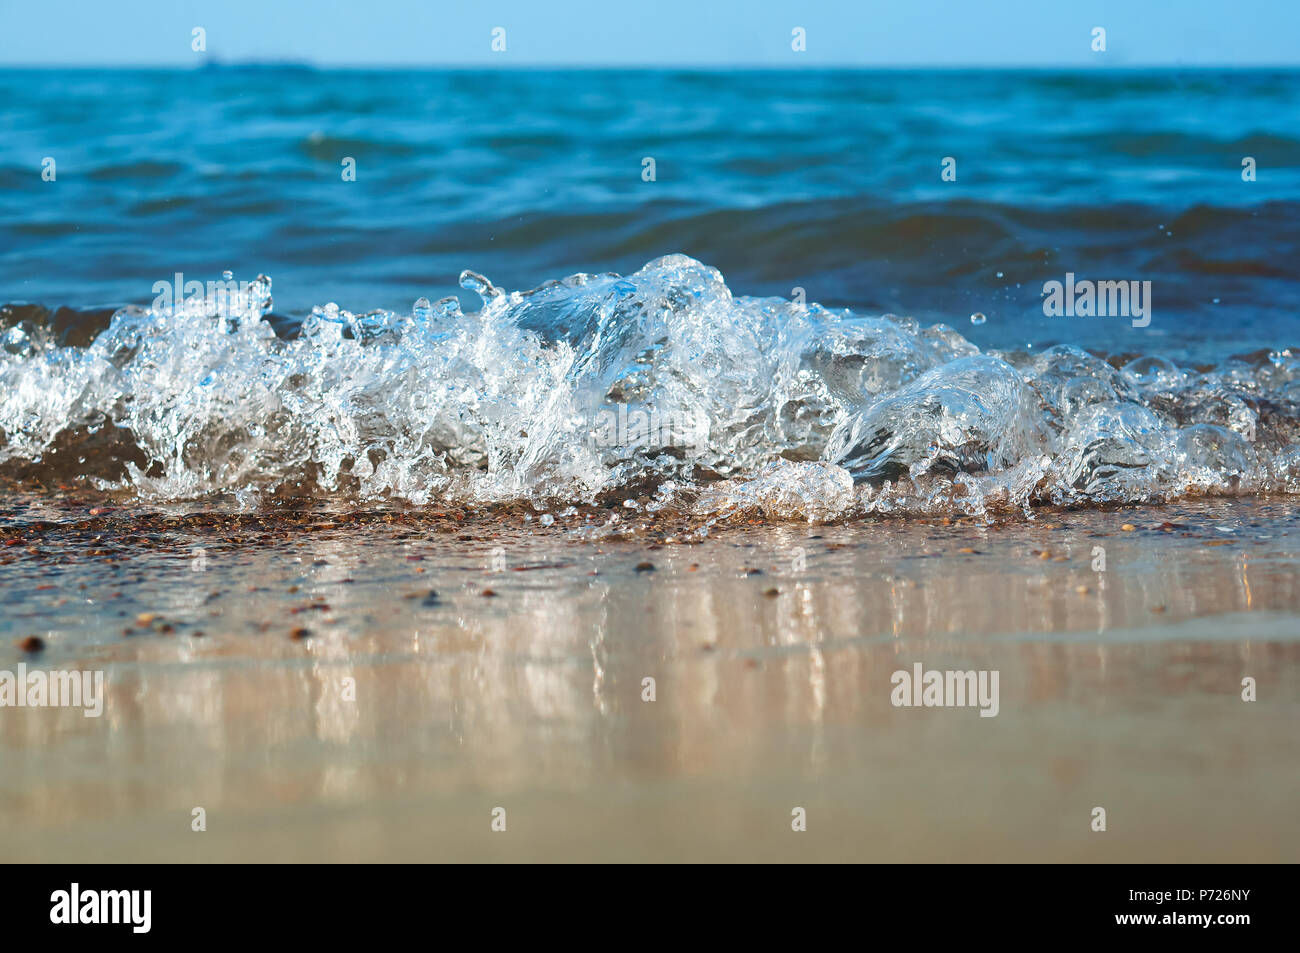 Onda de mar, una tormenta en el océano, la ola viene a tierra Foto de stock